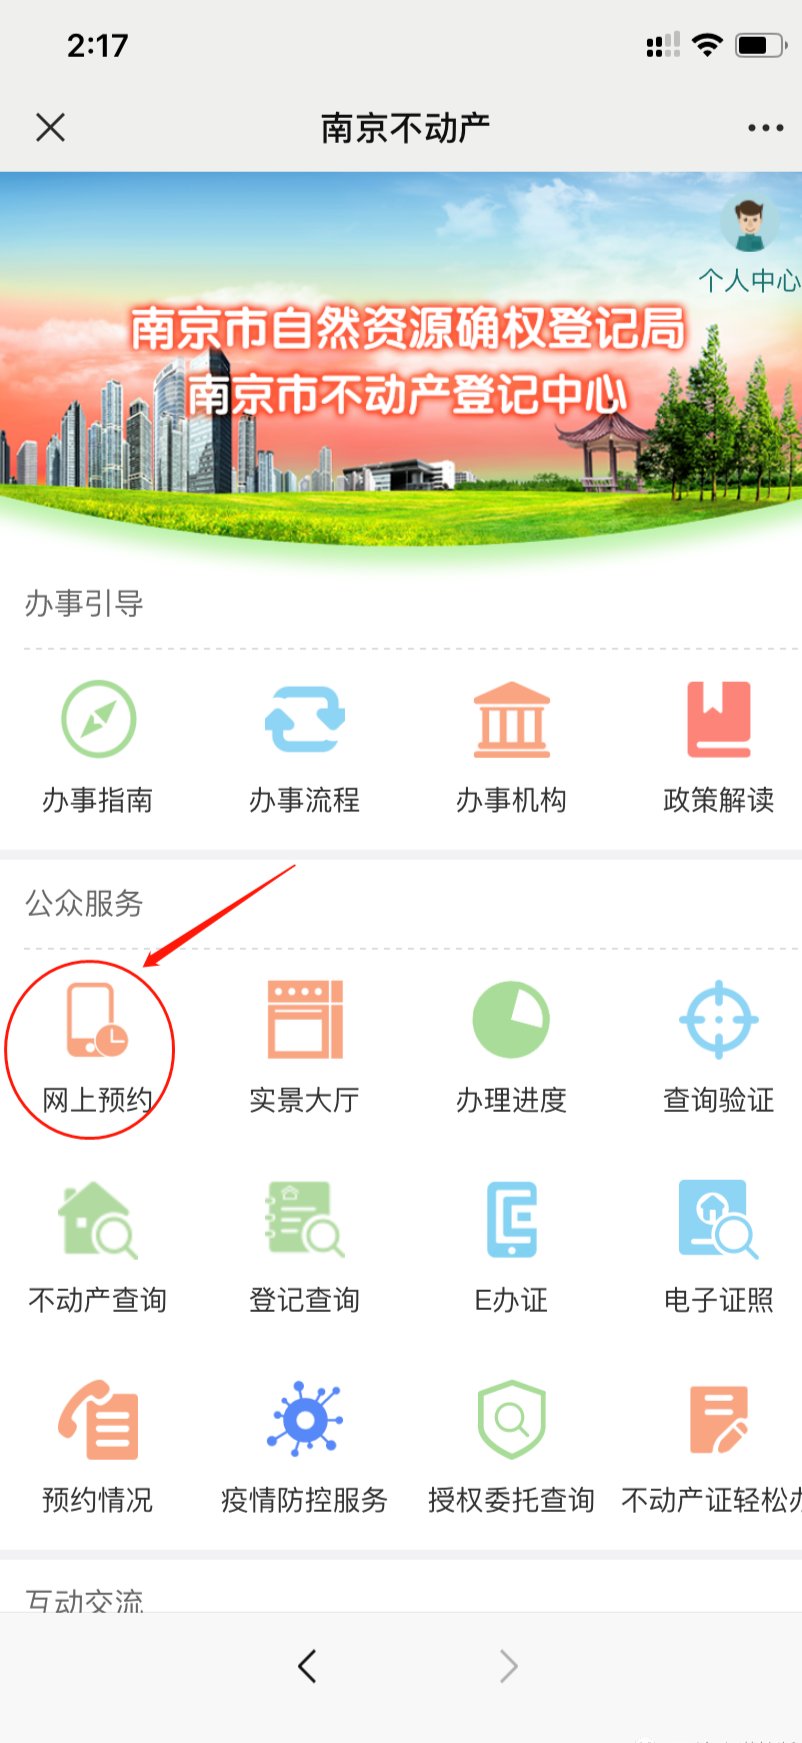 南京房产局办理业务如何网上预约?